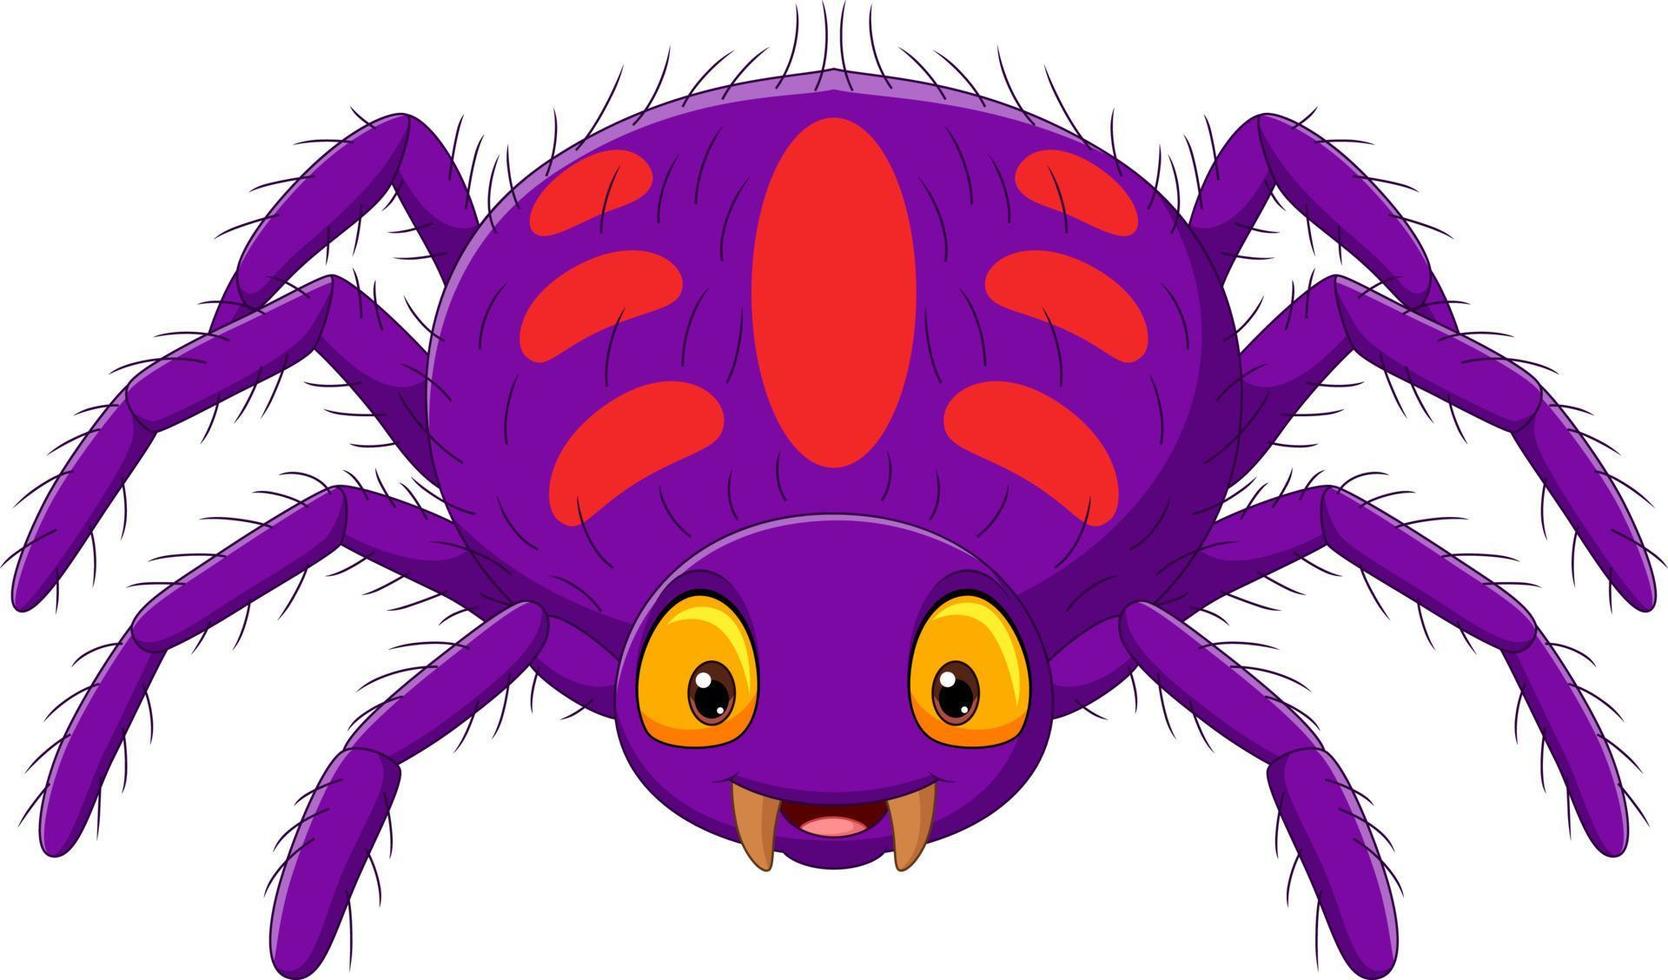 Araignée violette de dessin animé sur fond blanc vecteur